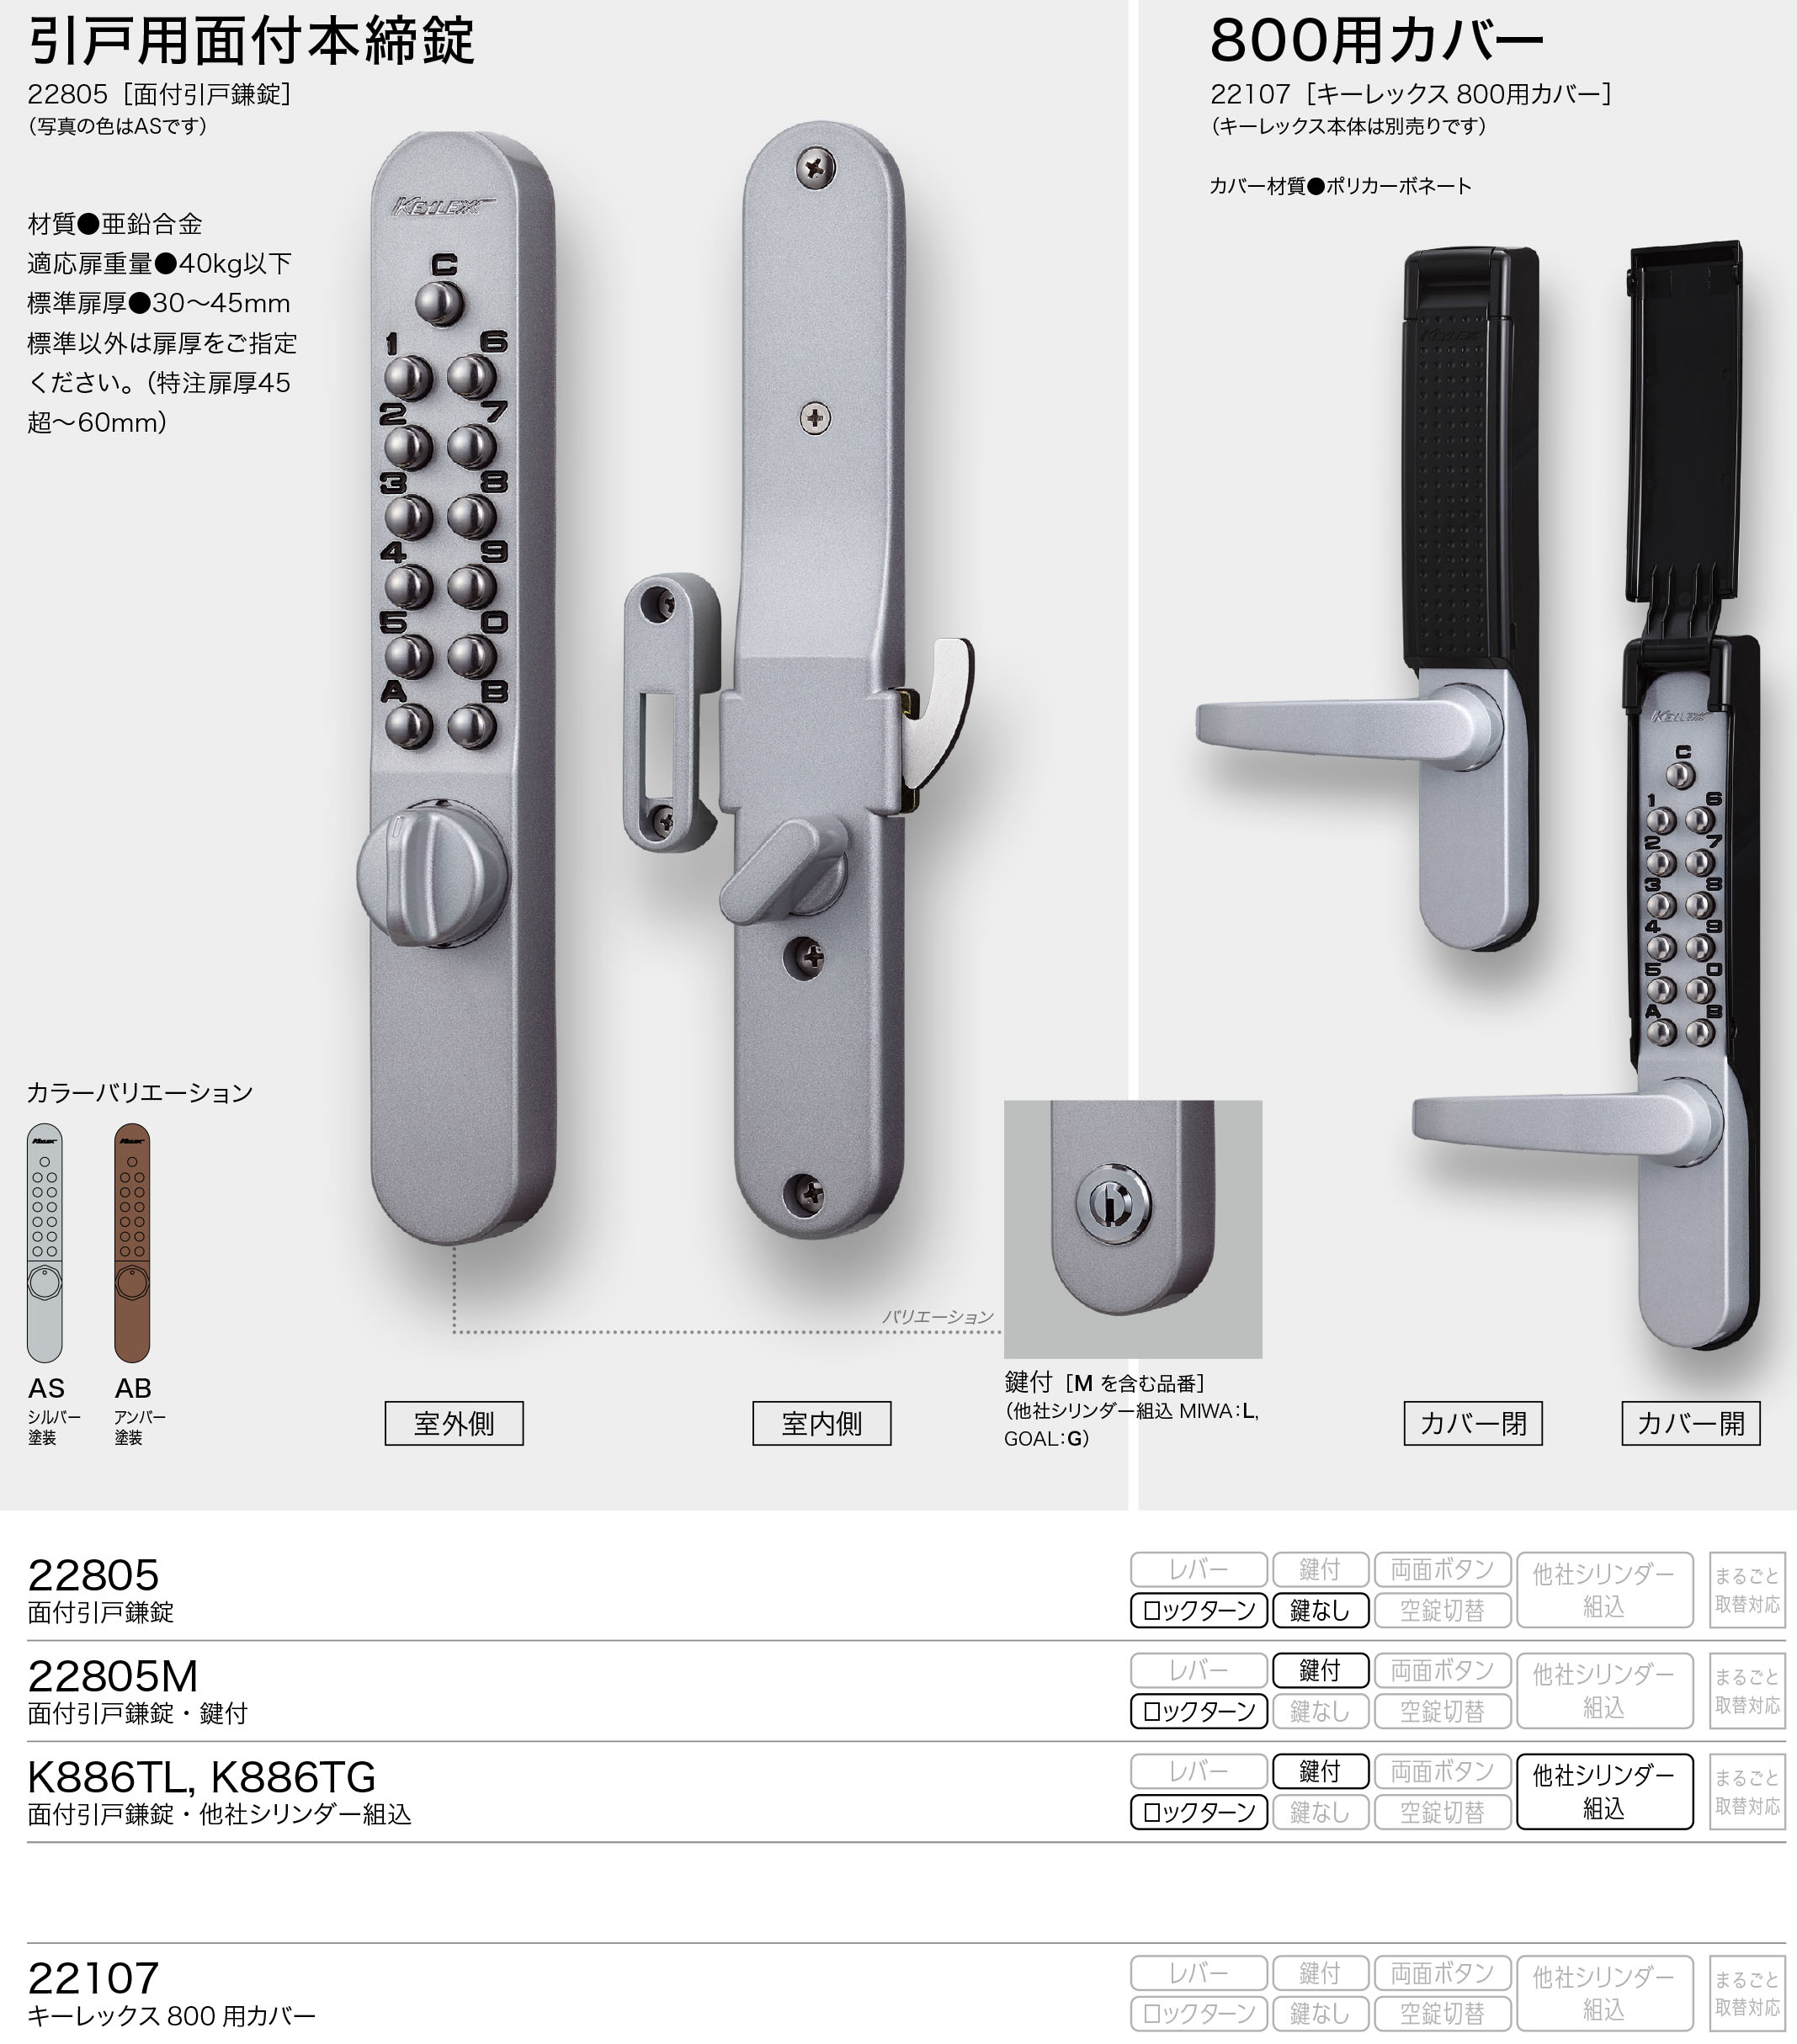 キーレックス 長沢製作所 Nagasawa Keylex500 框扉対応玉座取替錠 縦横の販売